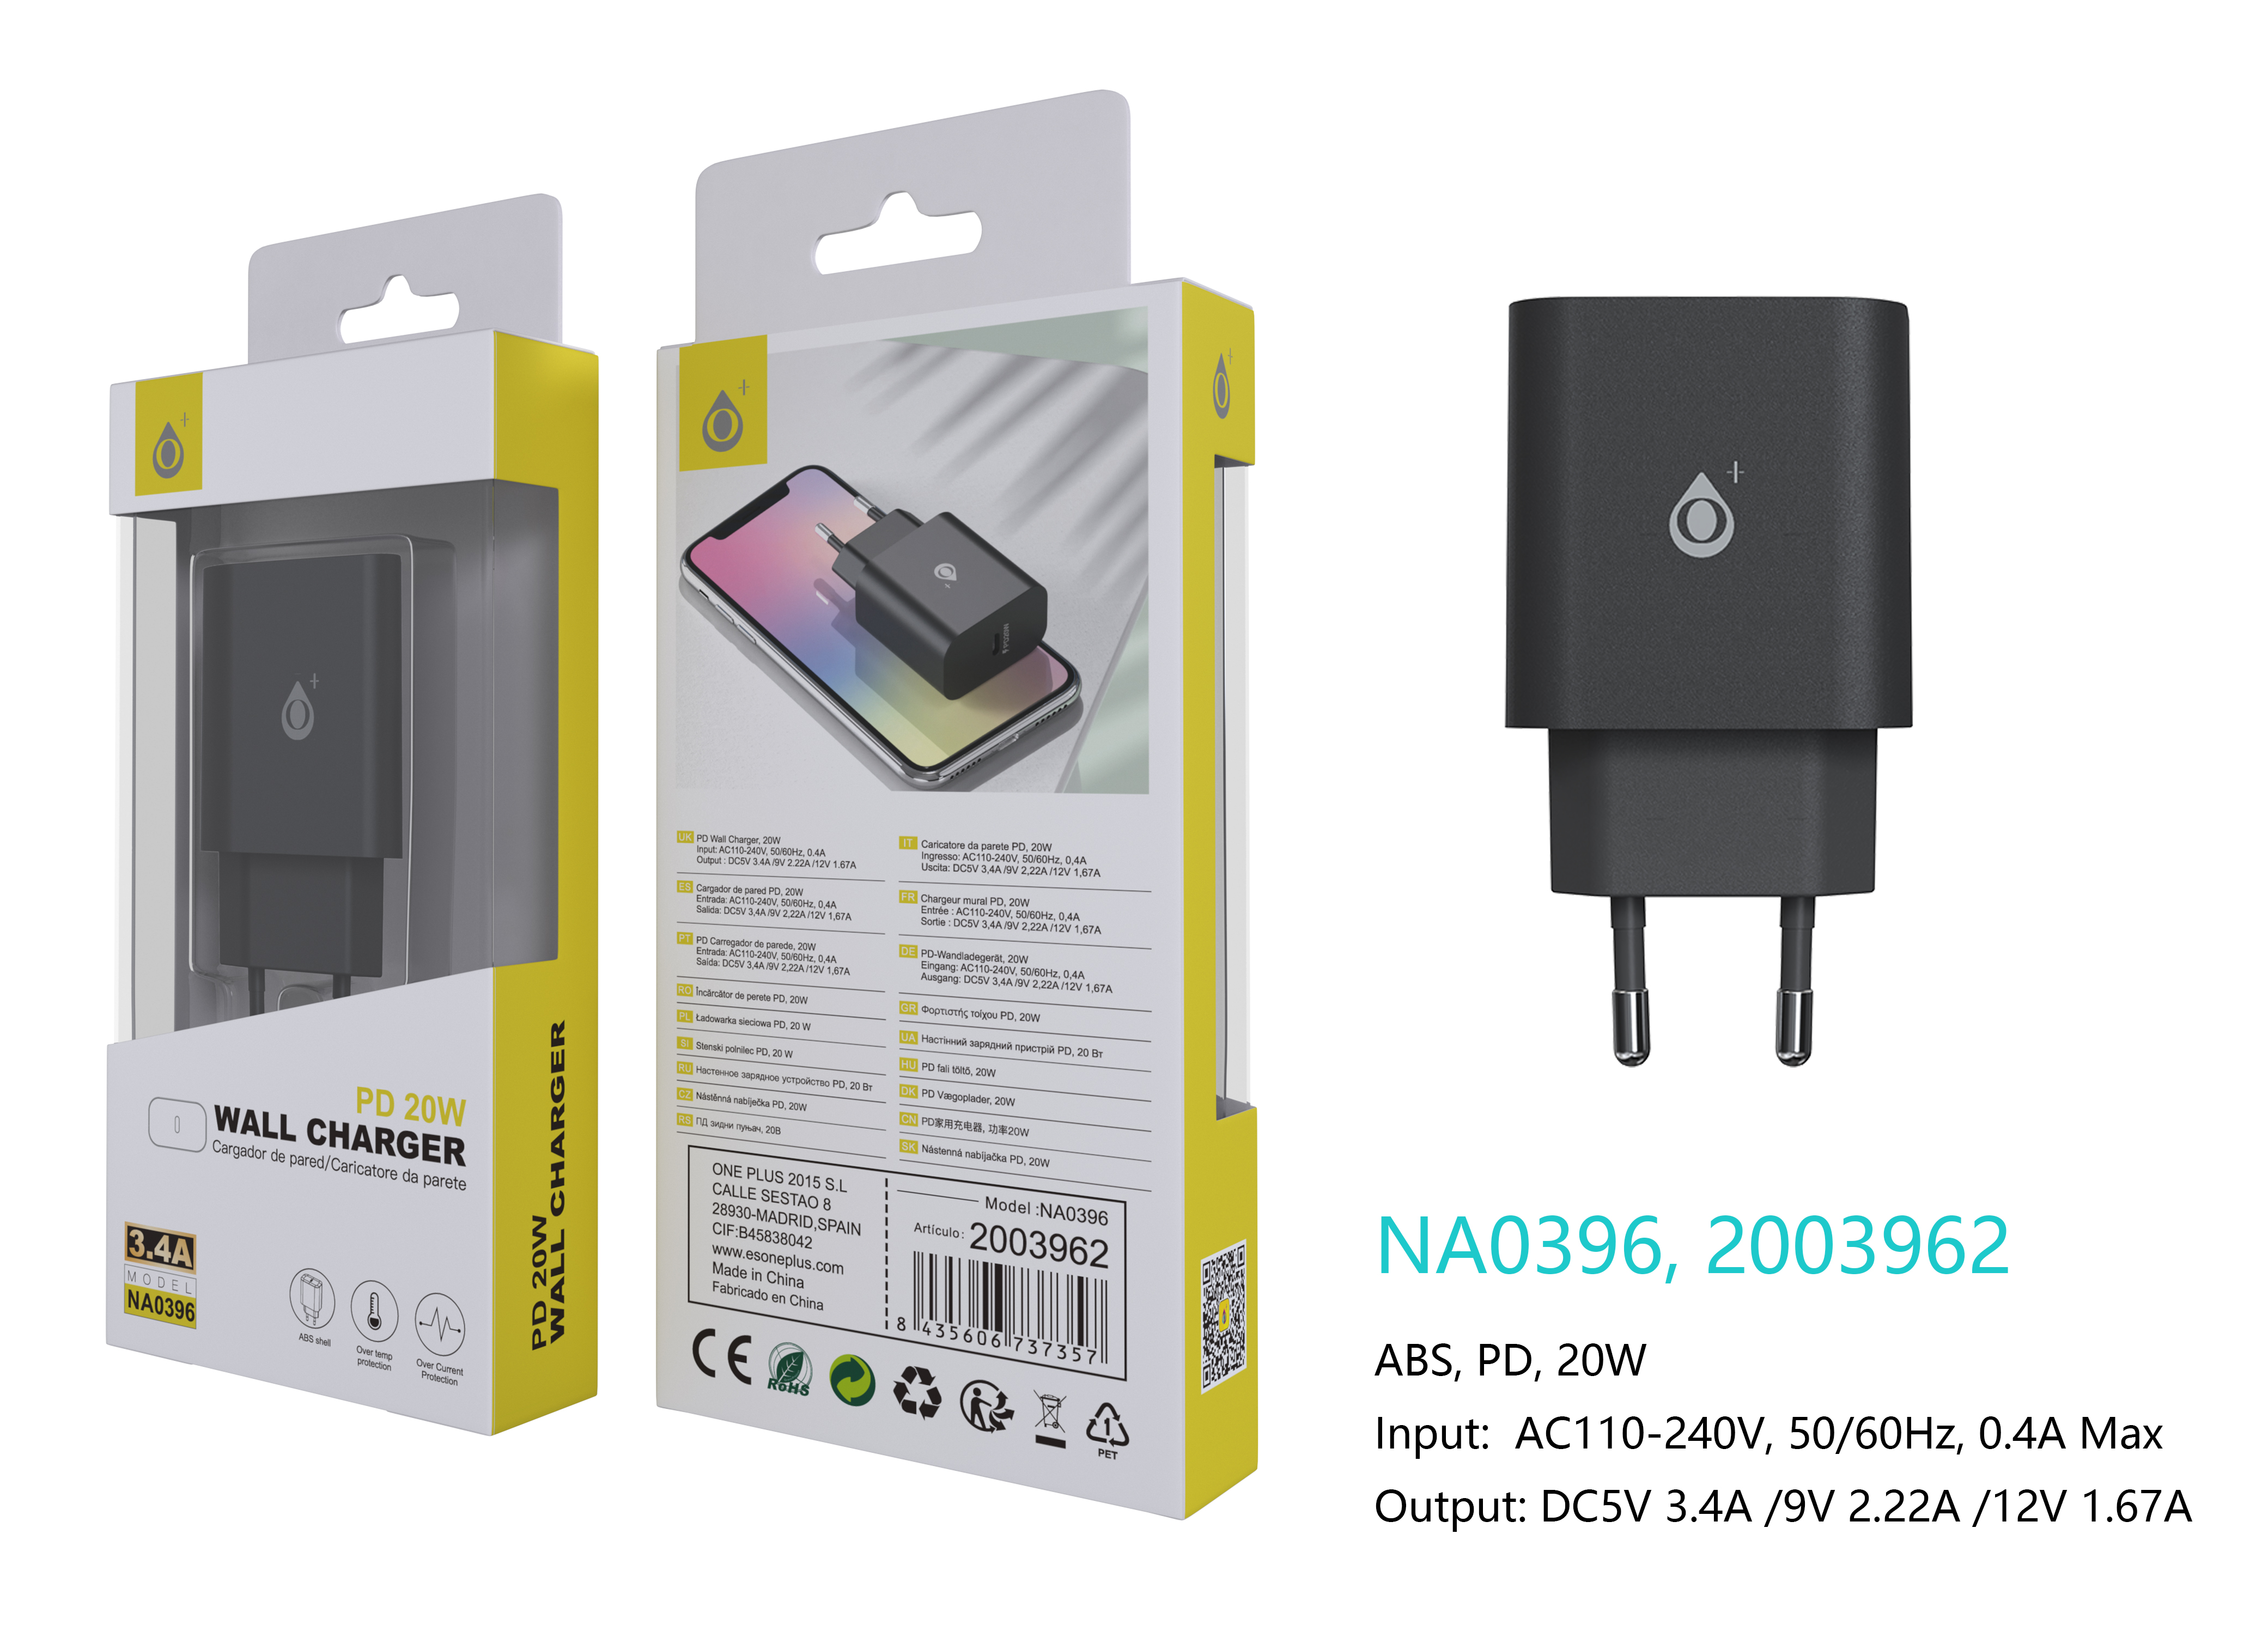 NA0396 NE Cargador de Red Rapida Berta, 1 puerto USB-C PD, Sin Cable 20W/3.4A(Max), Negro